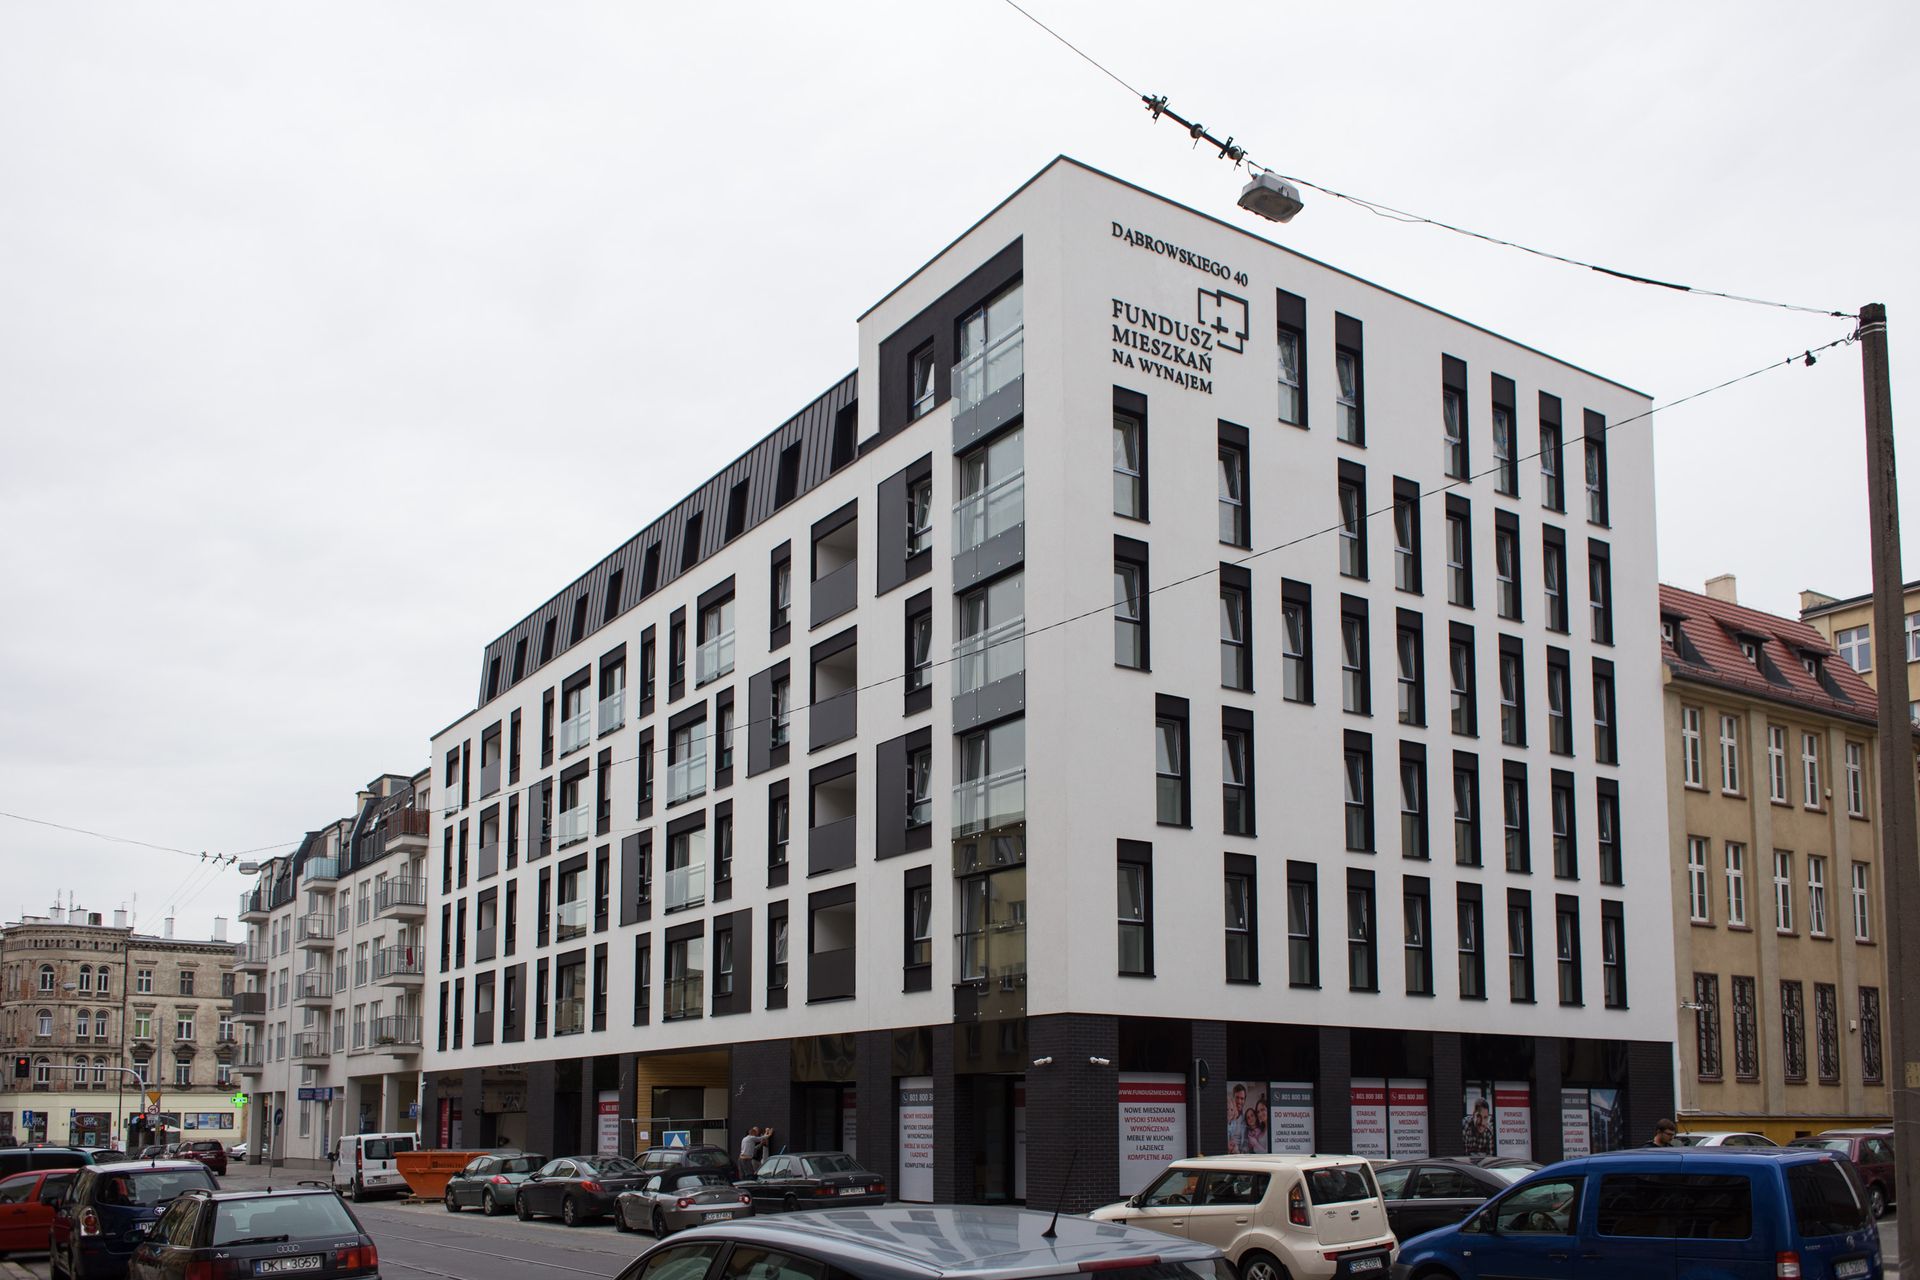  Budynek dla Funduszu Mieszkań na Wynajem sprzedany za ponad 43 mln złotych